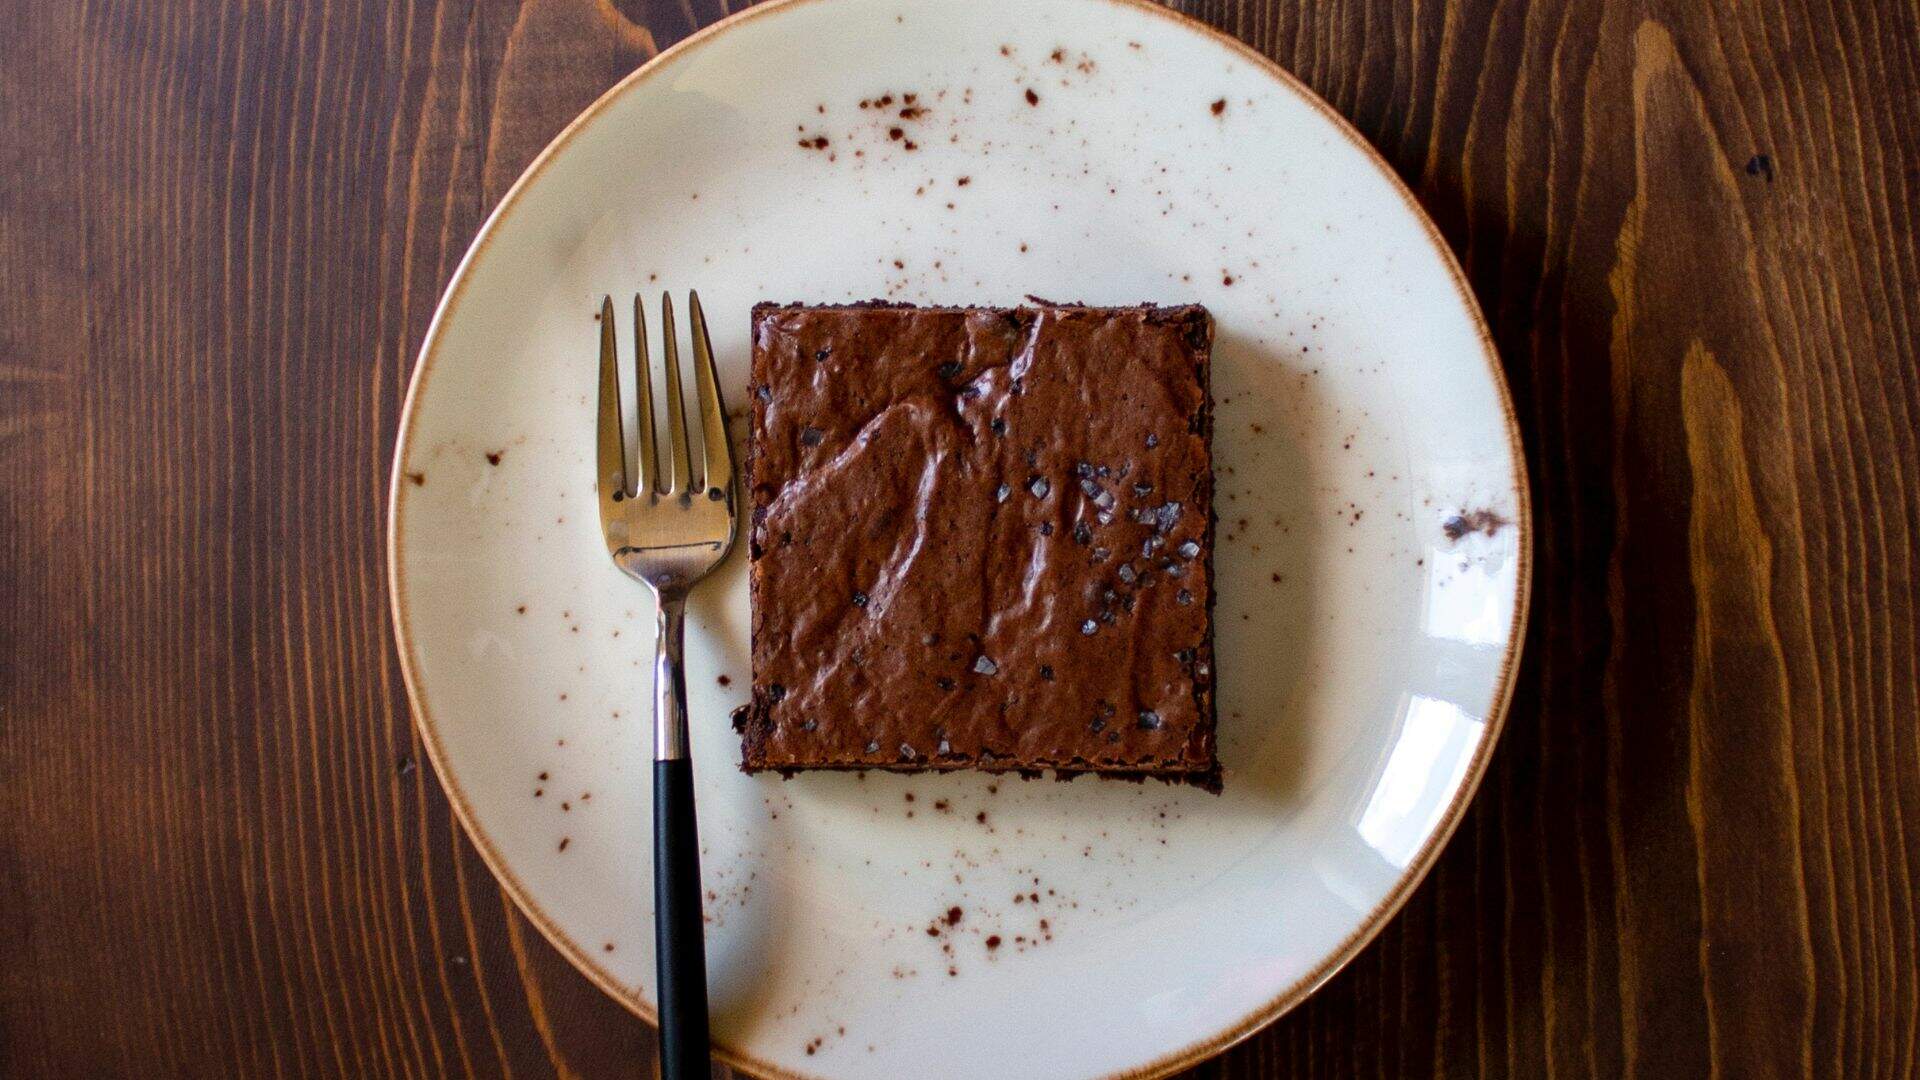 A fim de comer um brownie? Faça essa receita fácil, prática e que dá certo